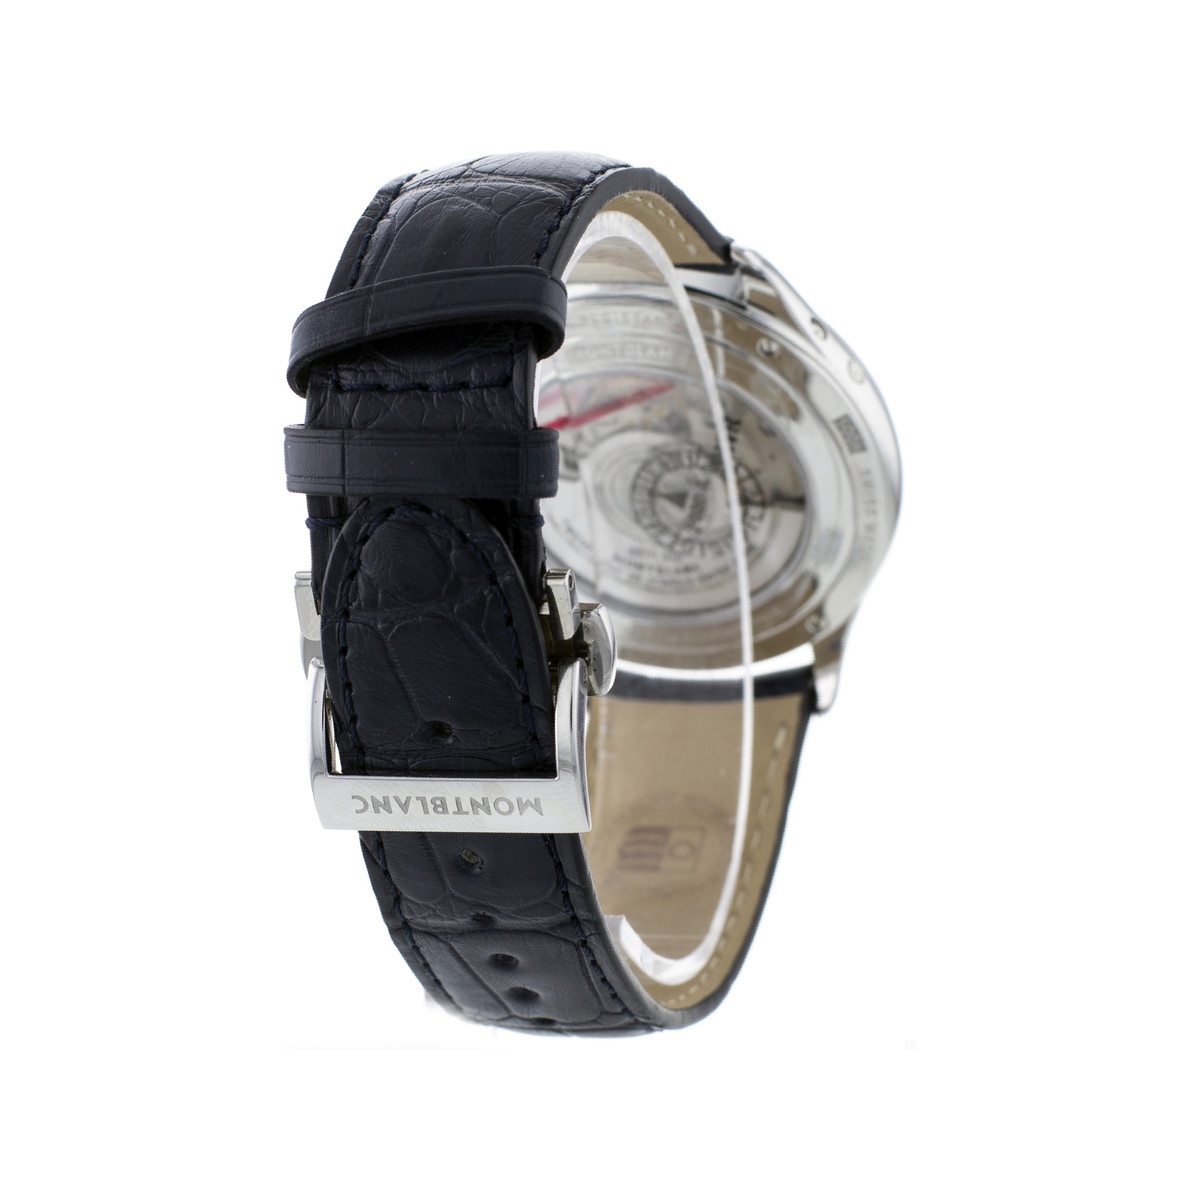 Montre d'occasion Montblanc Héritage QP homme automatique acier bracelet cuir noir - vue 3